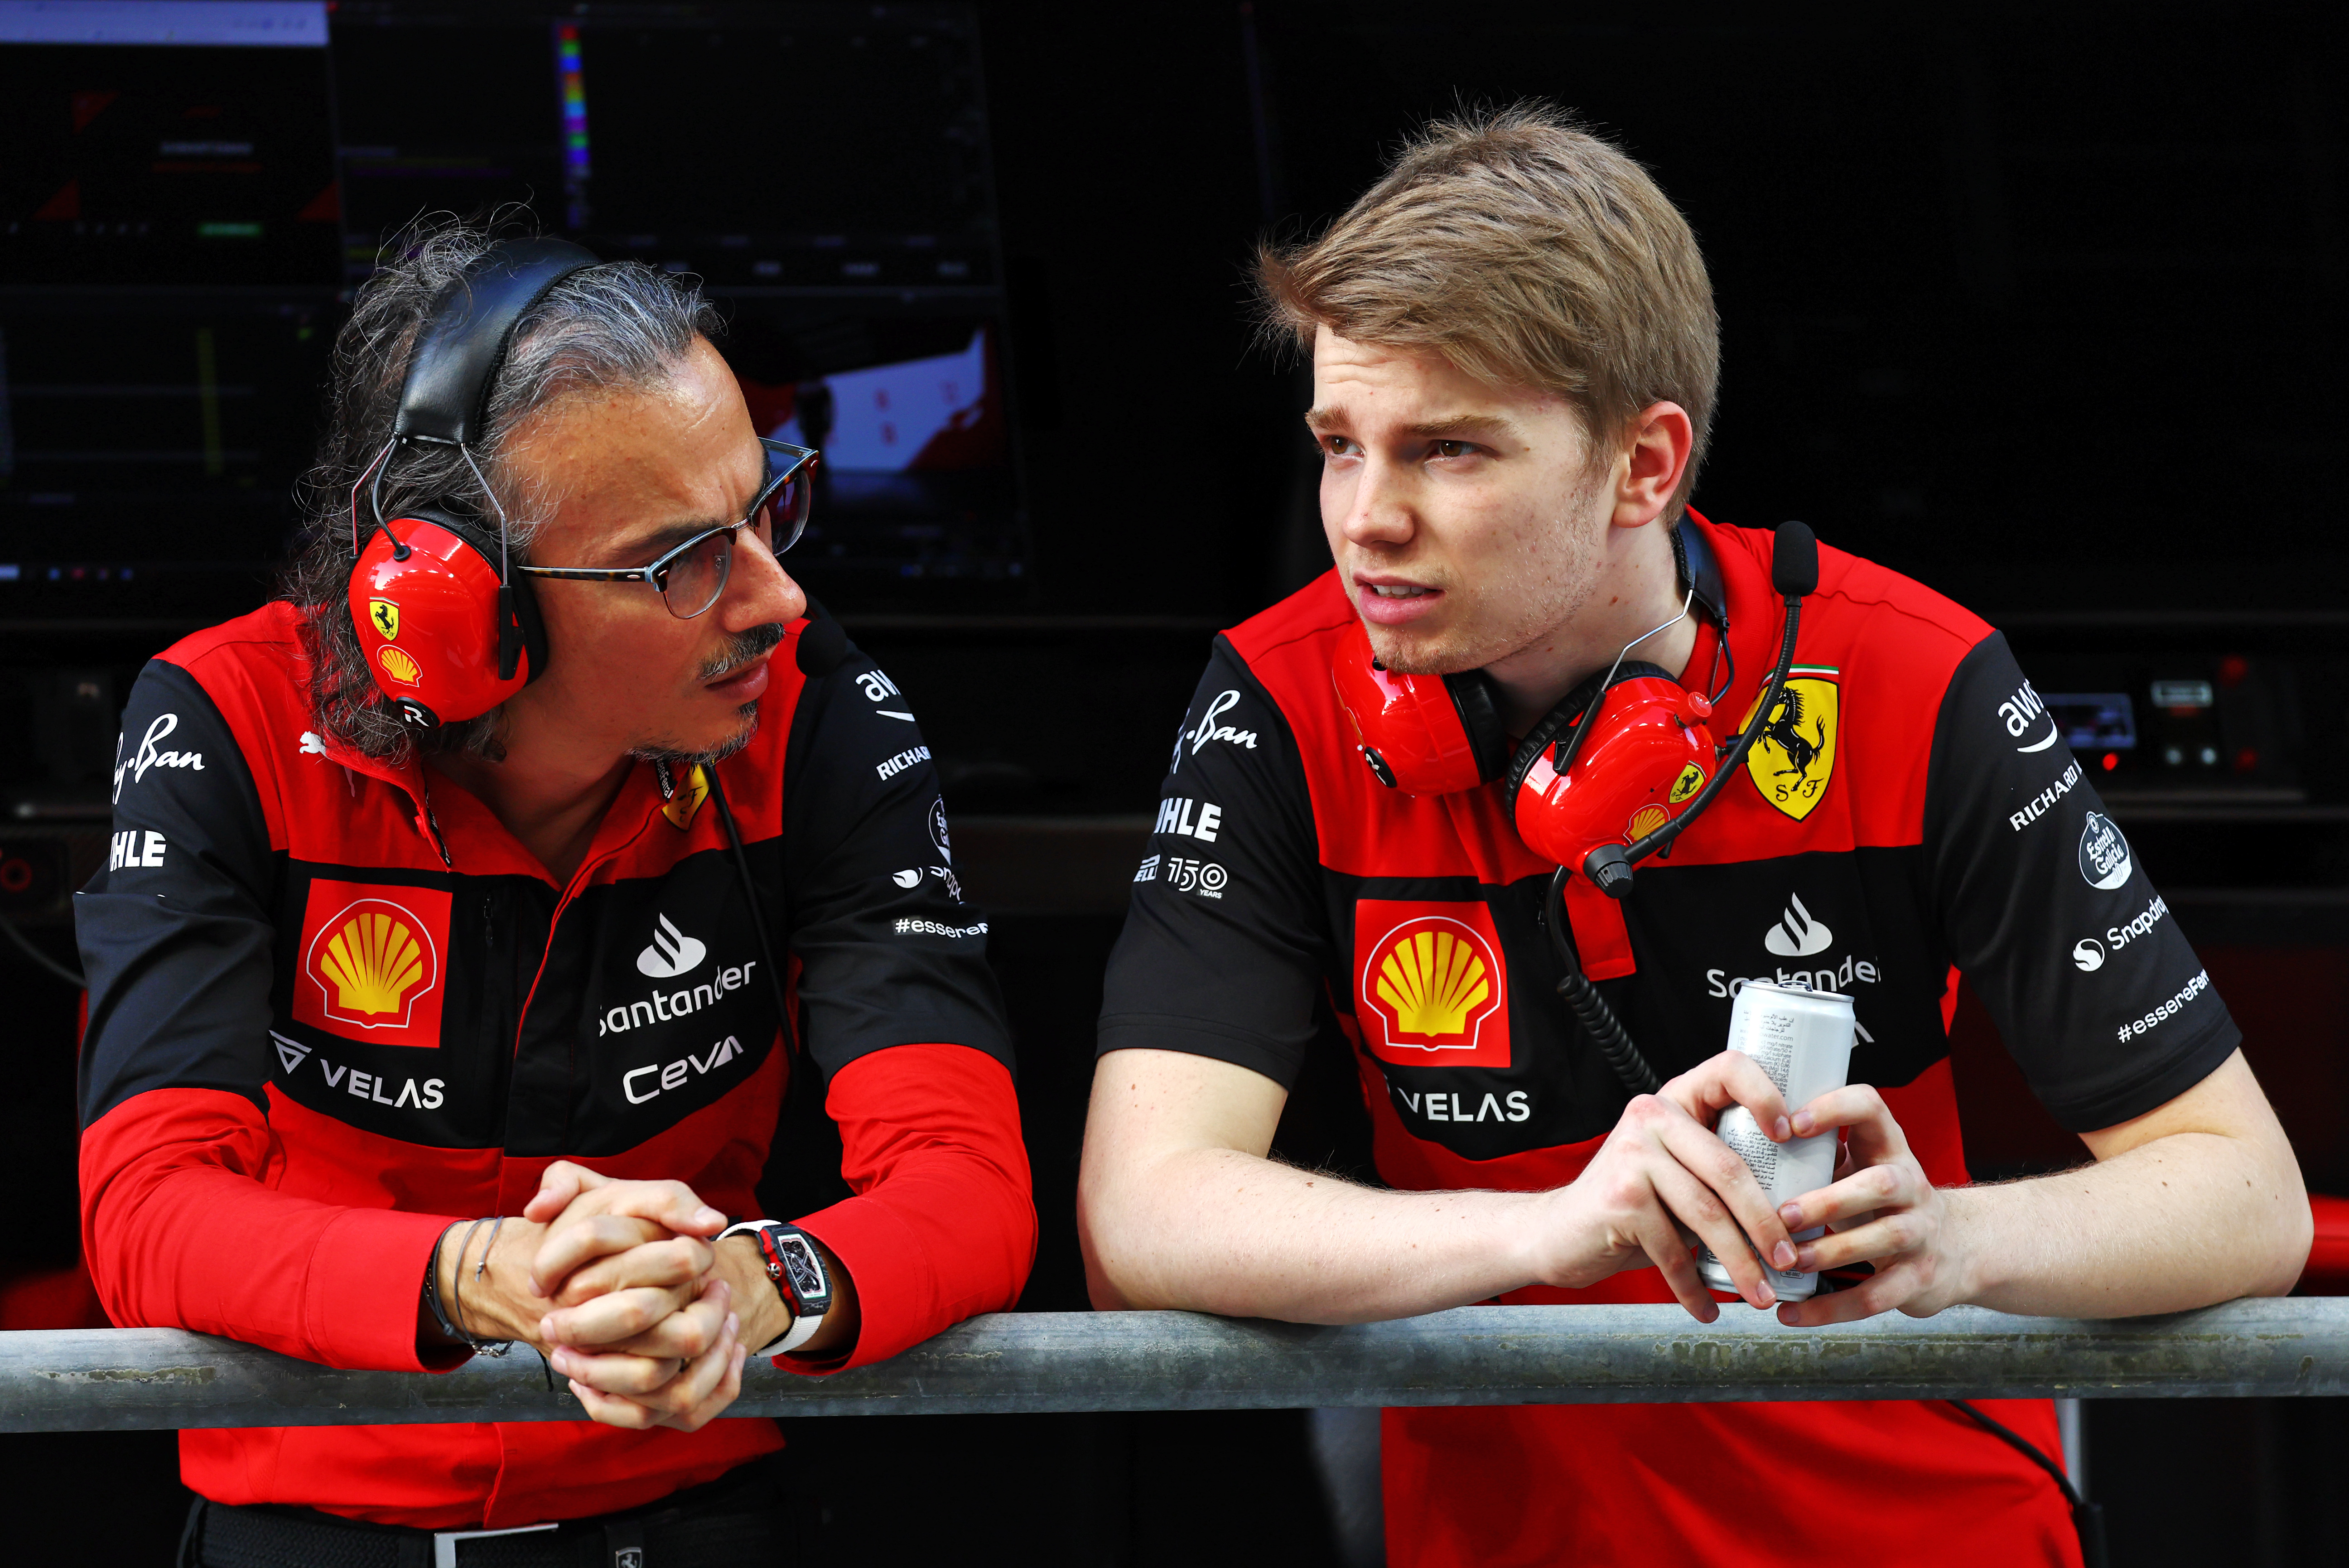 Giovinazzi, Shwartzman set to share Ferrari F1 reserve role in 2023